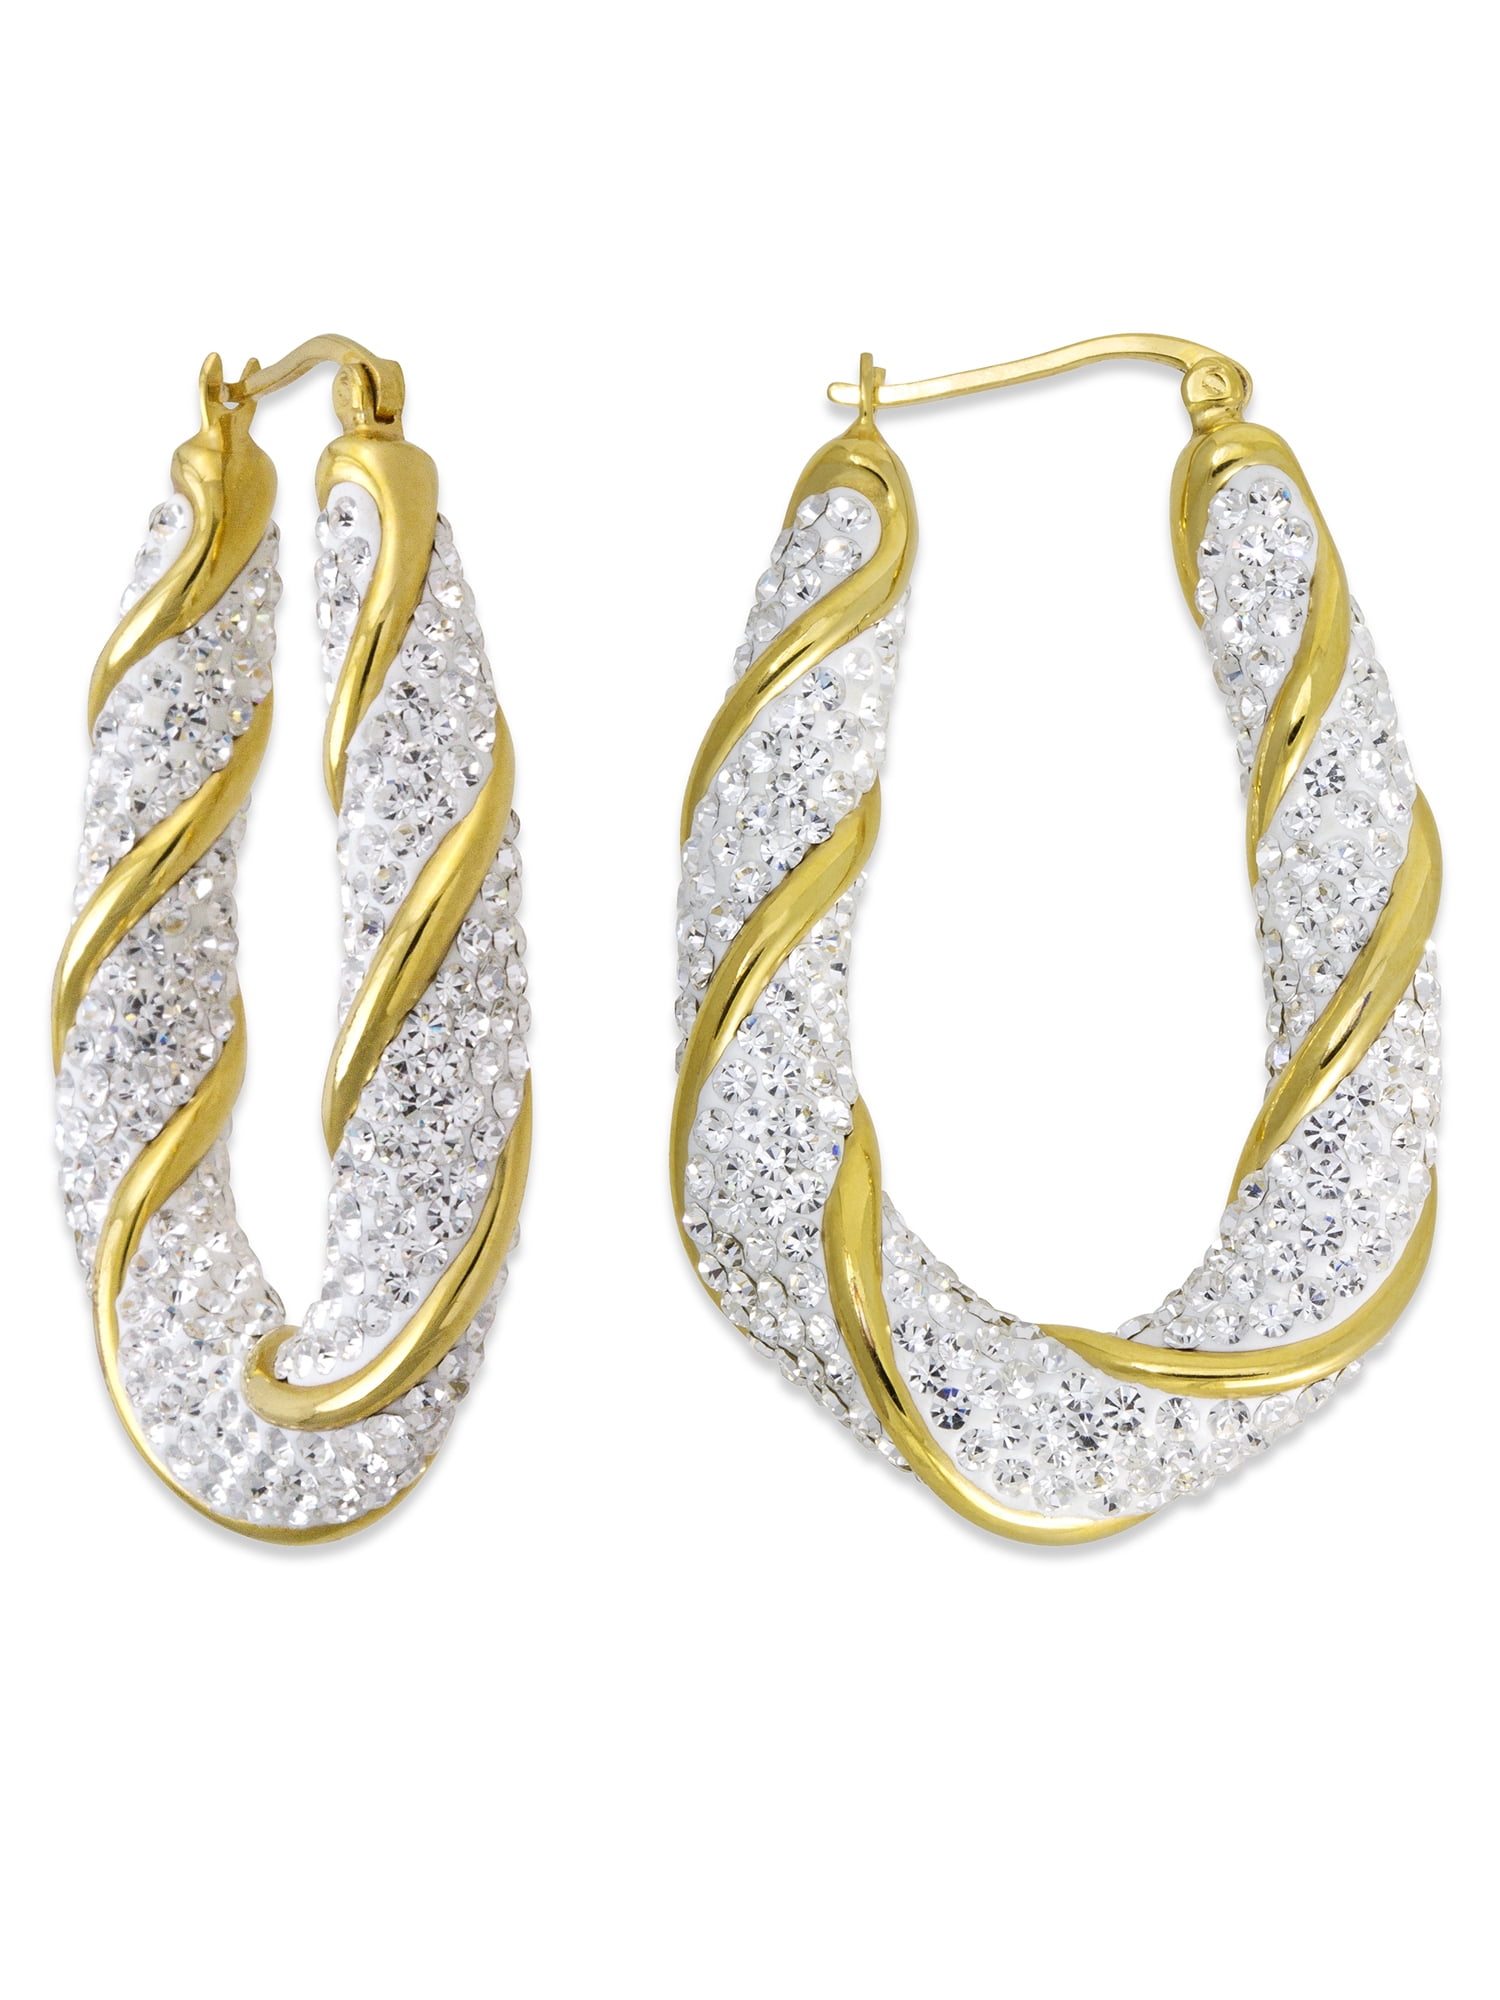 Personality Bright Rhinestone Earrings Women Hoop Earrings Fashion Sparkling Gold Hoop Earrings Shining Hoop Earrings for Women Woven Mesh Oval Earrings Oval shiny earrings 